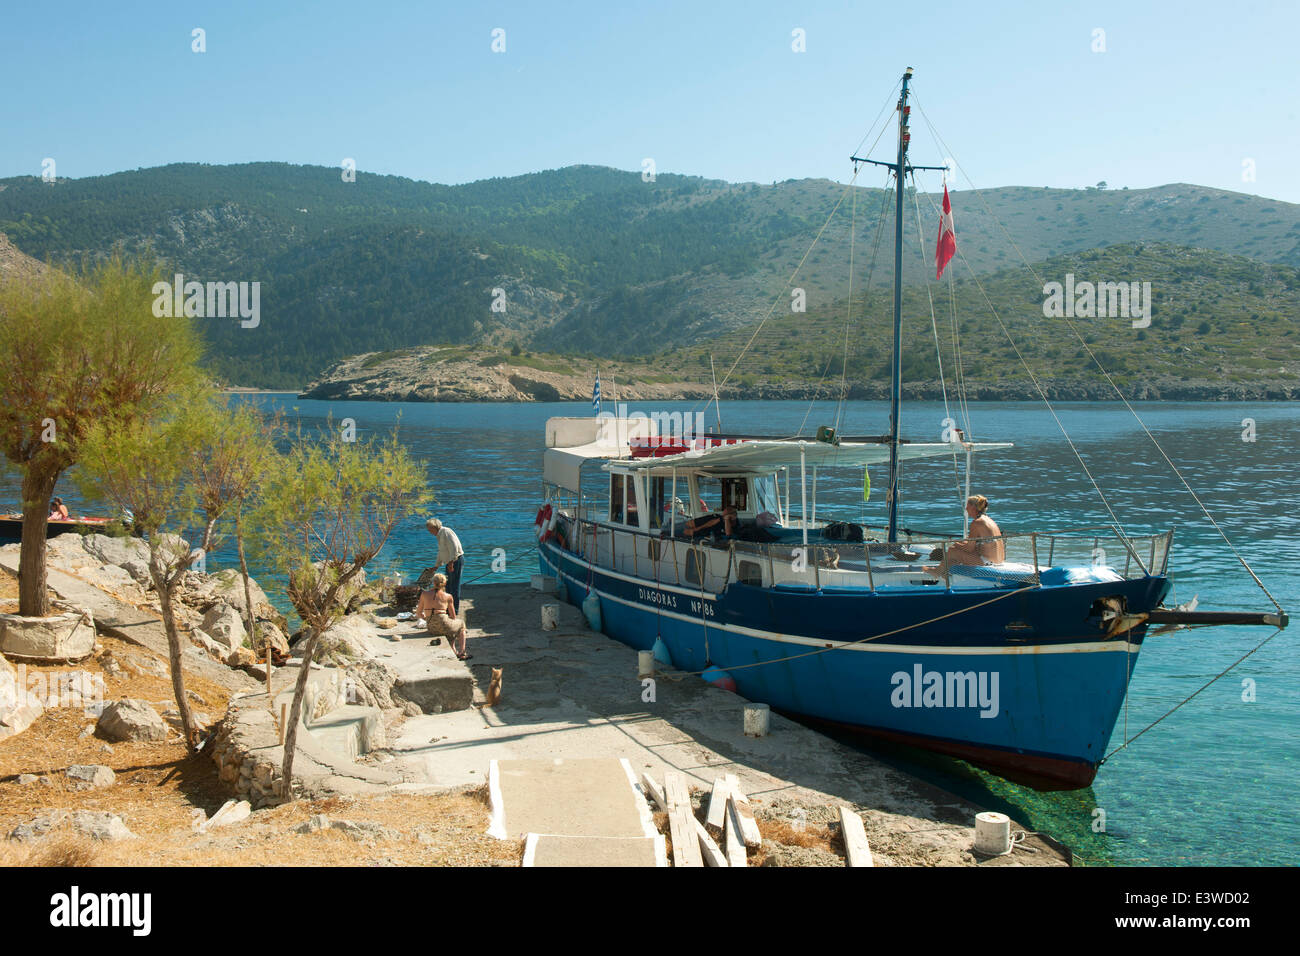 Griechenland, Symi, Kloster Agios Emilianos im Nordwesten der Insel, auf einer Halbinsel gelegen. Ausflugsboot Diagoras. Stock Photo